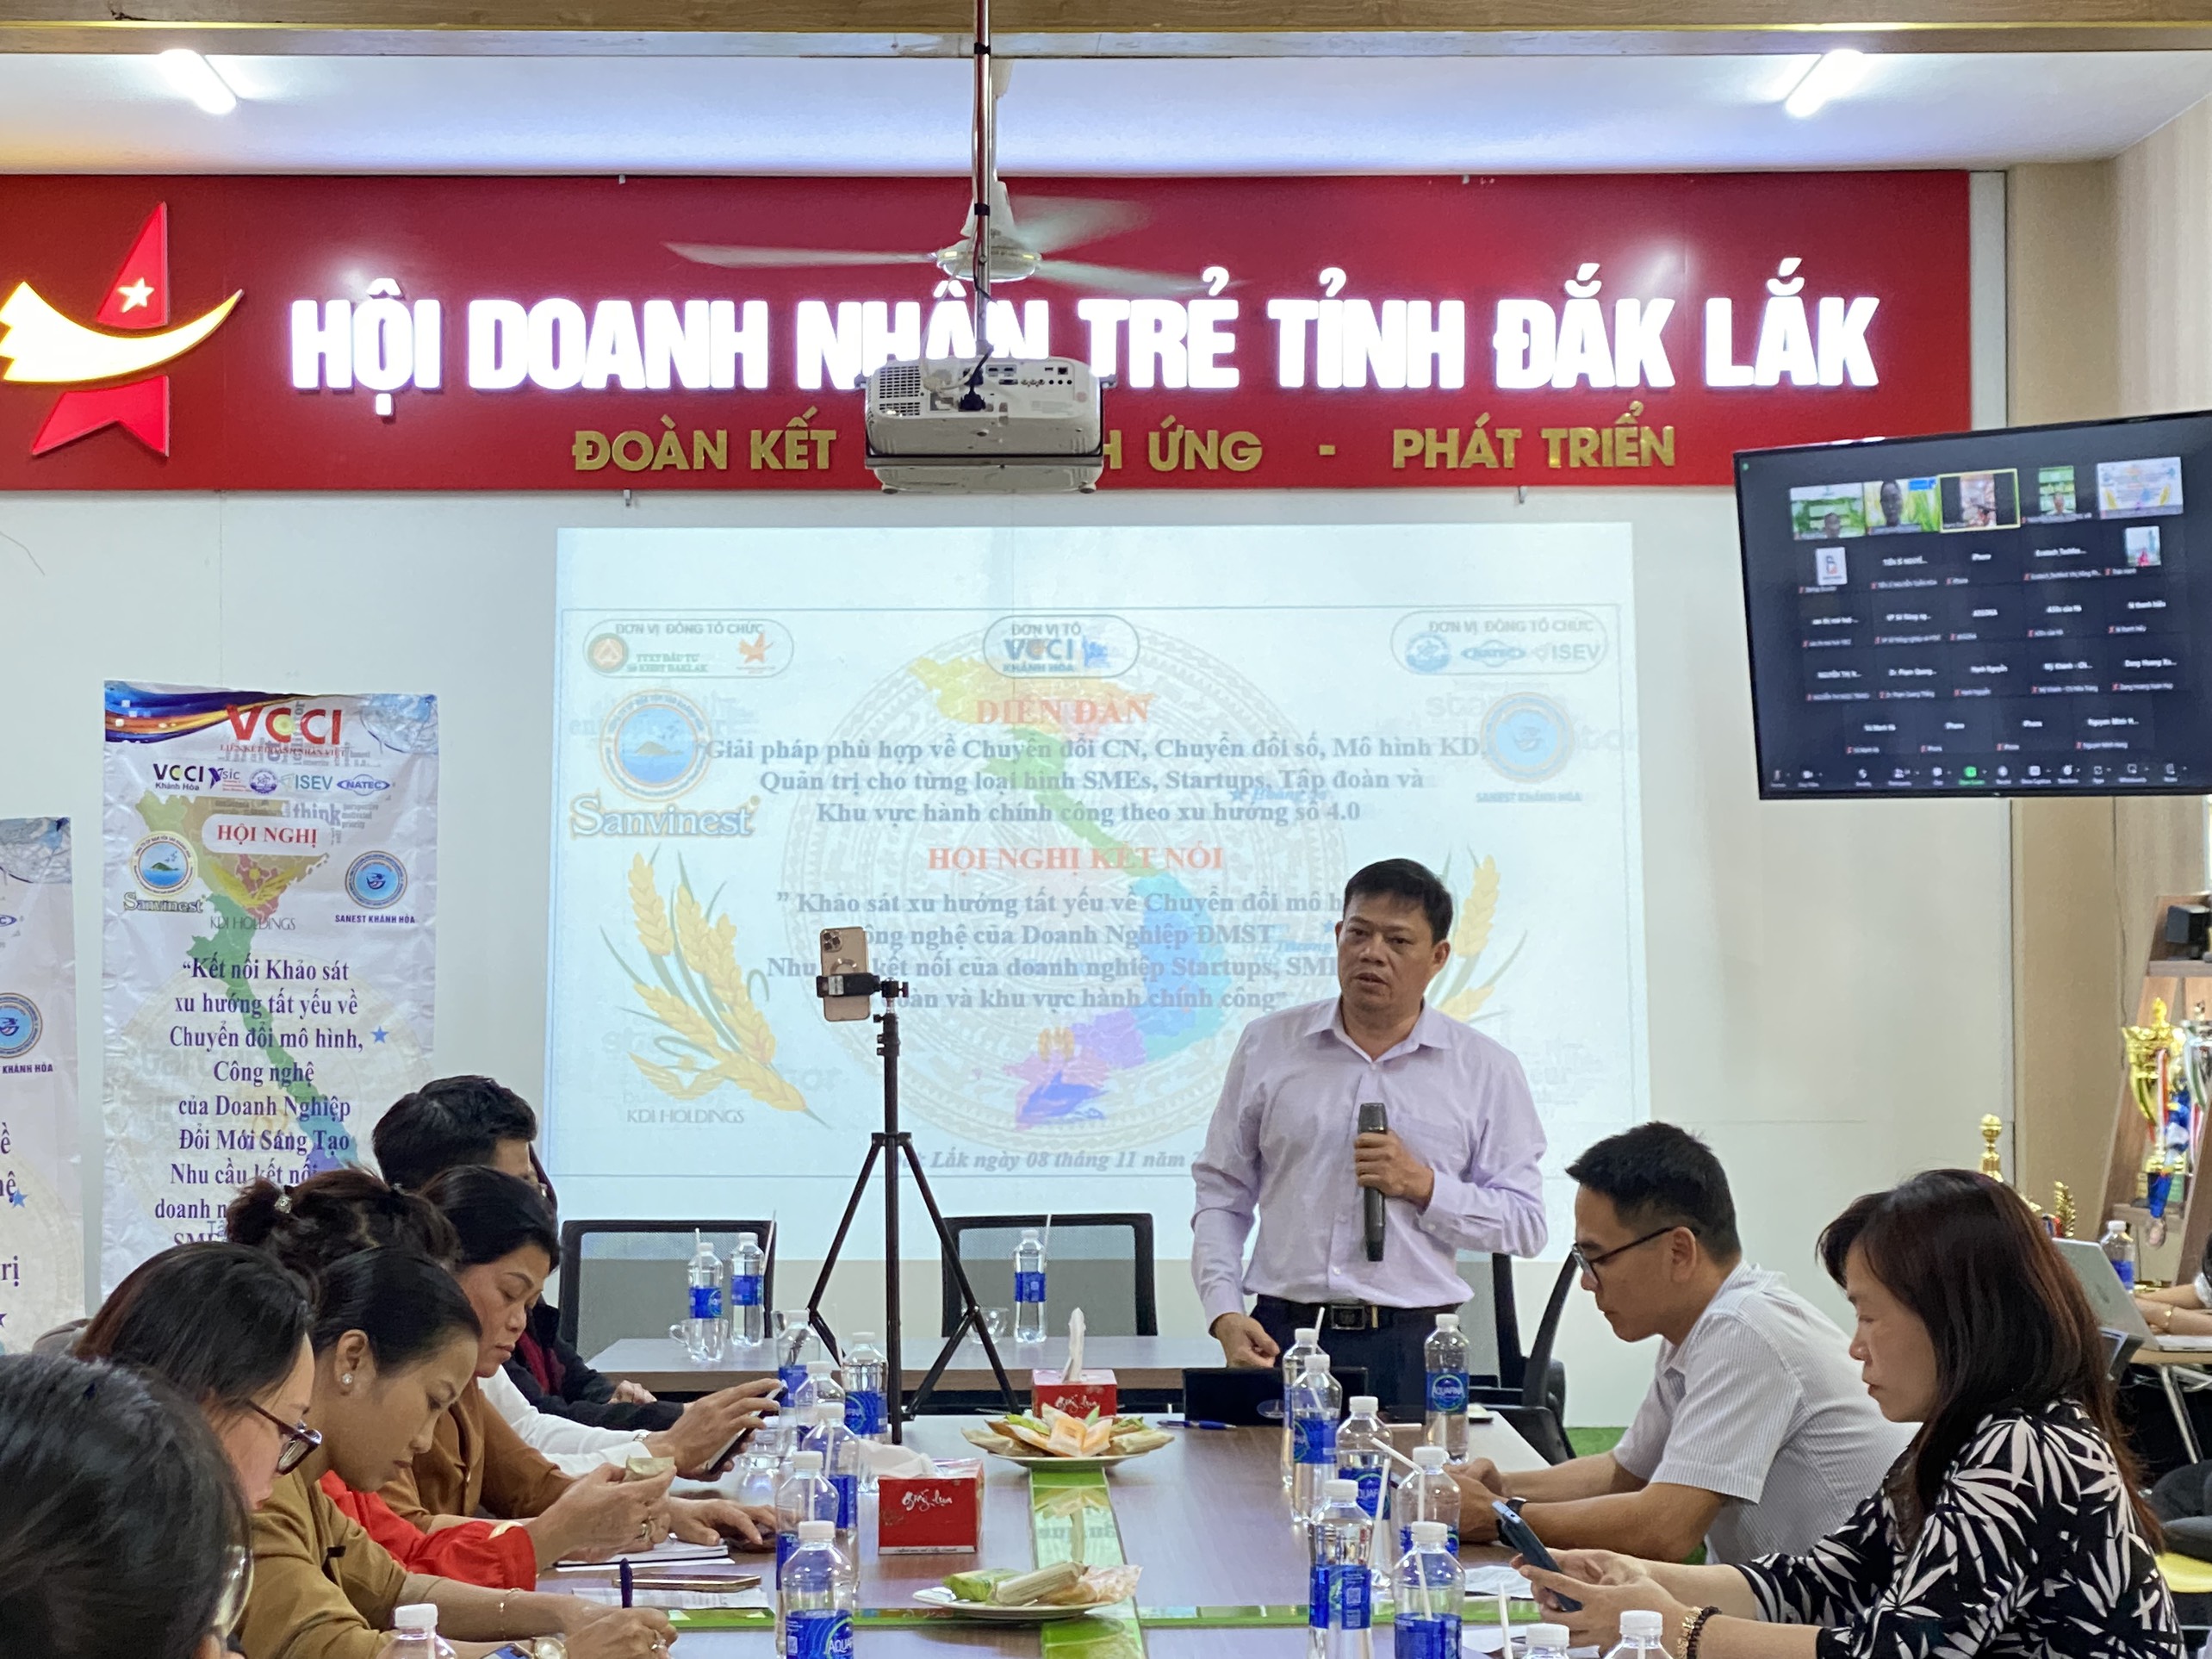 Tìm giải pháp chuyển đổi mô hình, công nghệ cho doanh nghiệp đổi mới sáng tạo tại Đắk Lắk